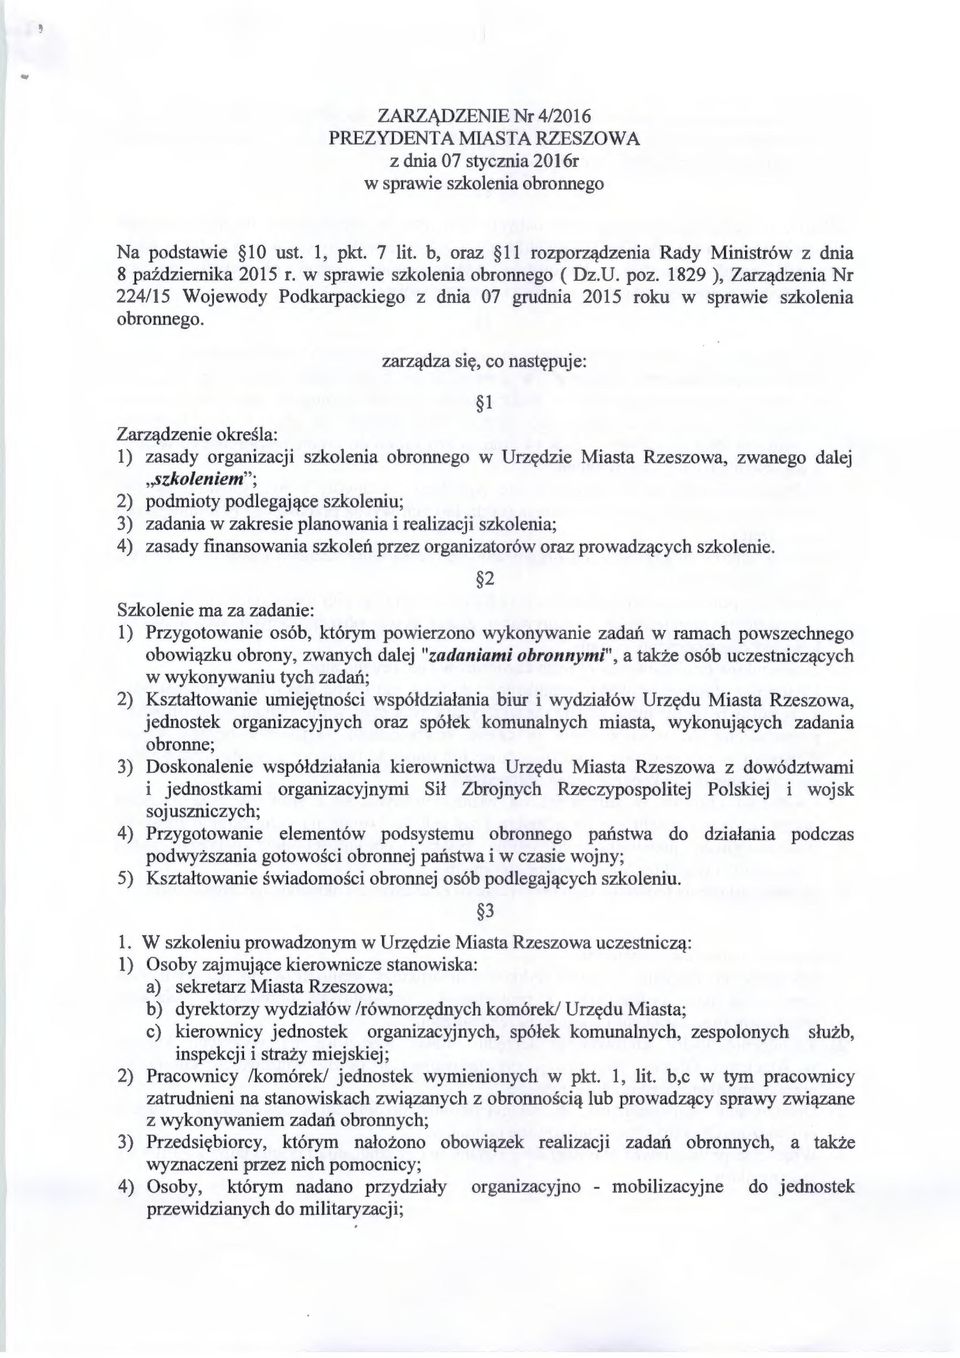 1829 ), Zarządzenia Nr 224/15 Wojewody Podkarpackiego z dnia 07 grudnia 2015 roku w sprawie szkolenia obronnego.